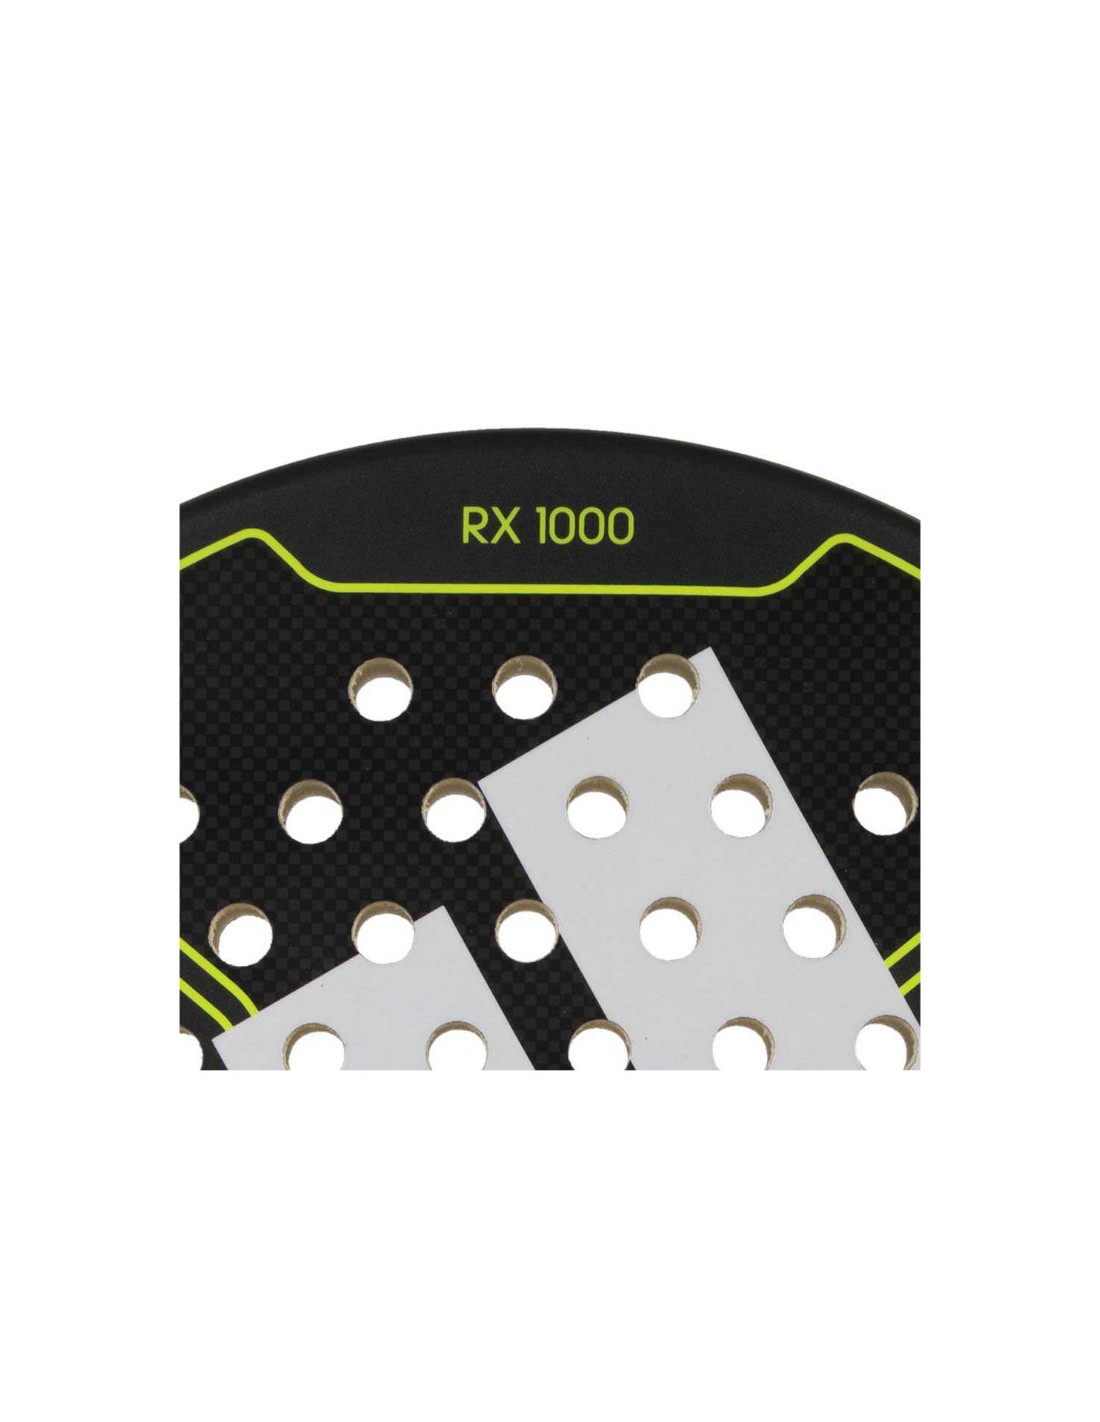 Pala de pádel adidas RX 1000